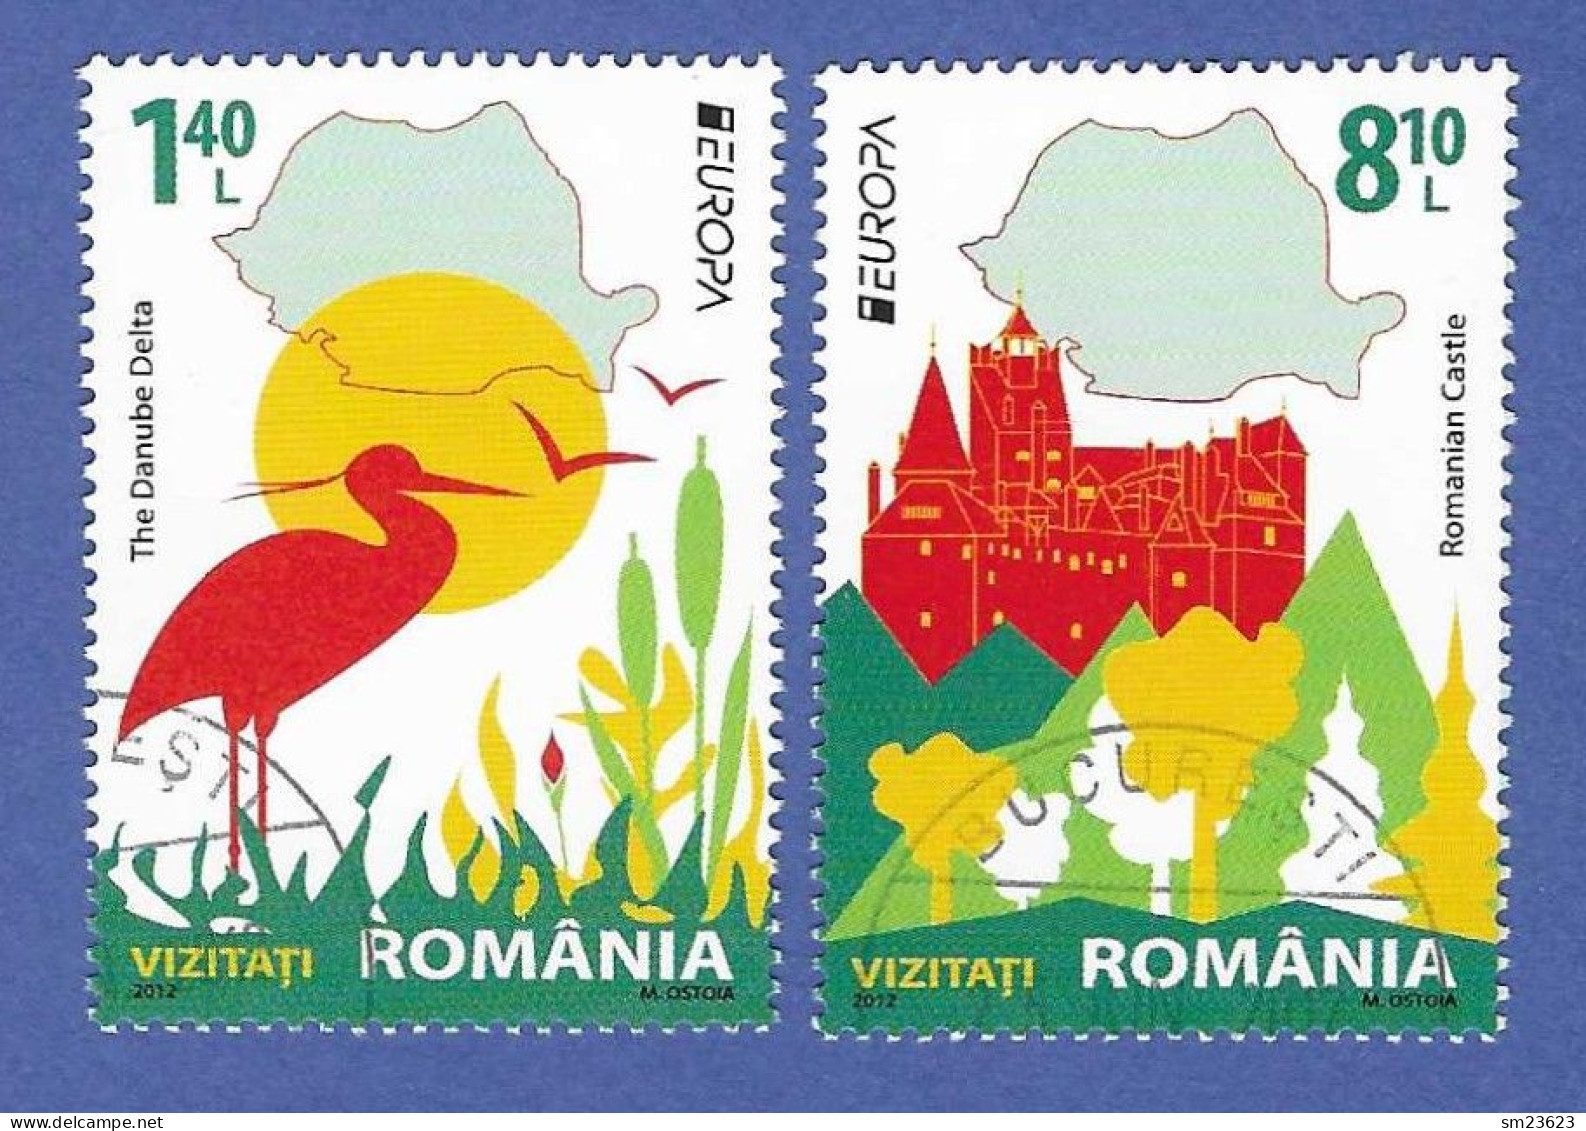 Rumänien / Romänia 2012  Mi.Nr. 6617 / 6618 , EUROPA CEPT Visite - Gestempelt / Fine Used / (o) - 2012